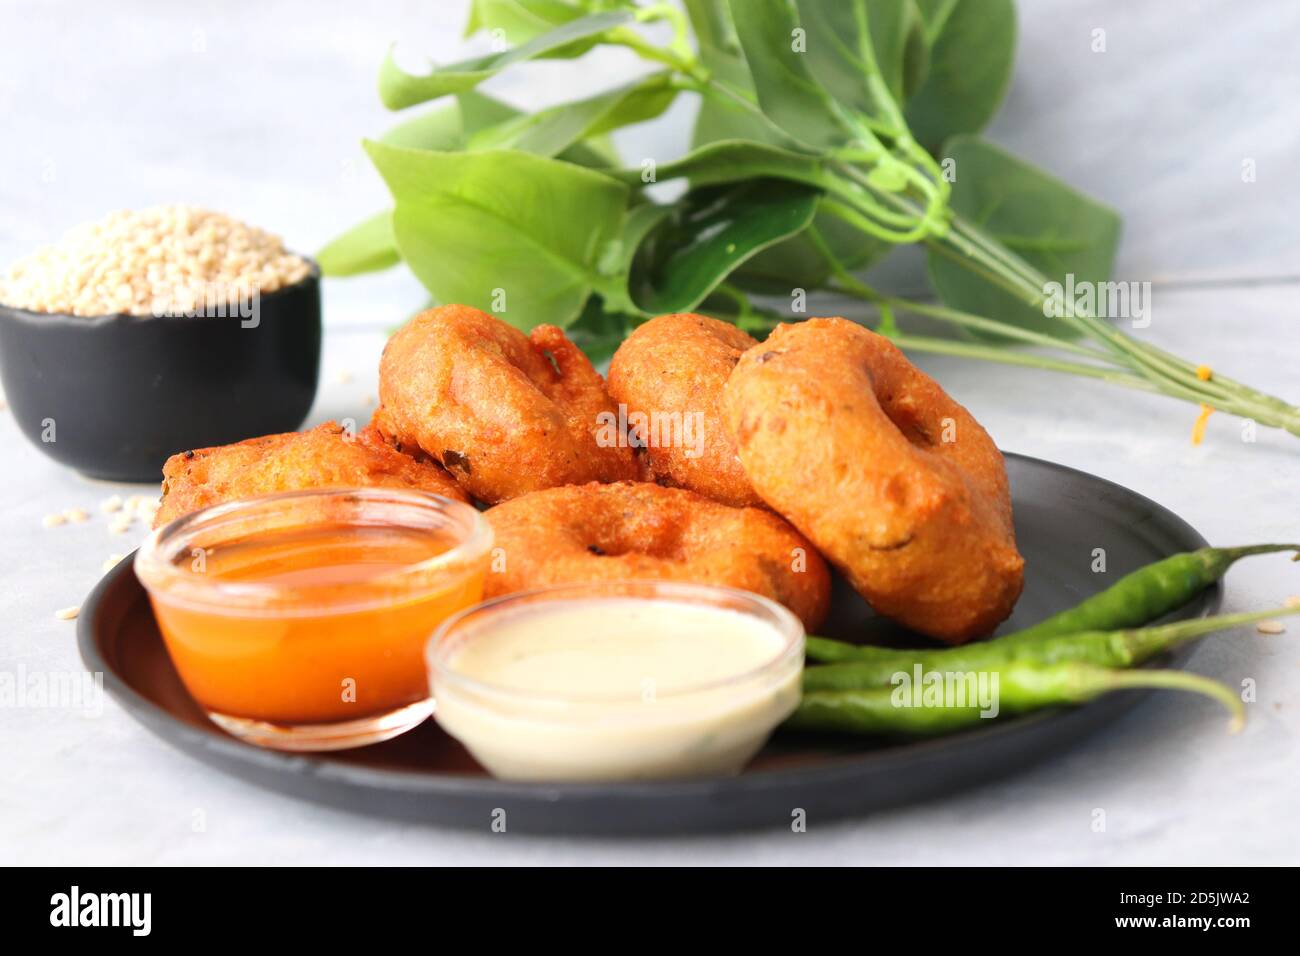 Vada oder Medu Vadai mit Sambar und Kokos-Chutney - Beliebte südindische Snack. Rezept Zutaten mit Copy Space Stockfoto